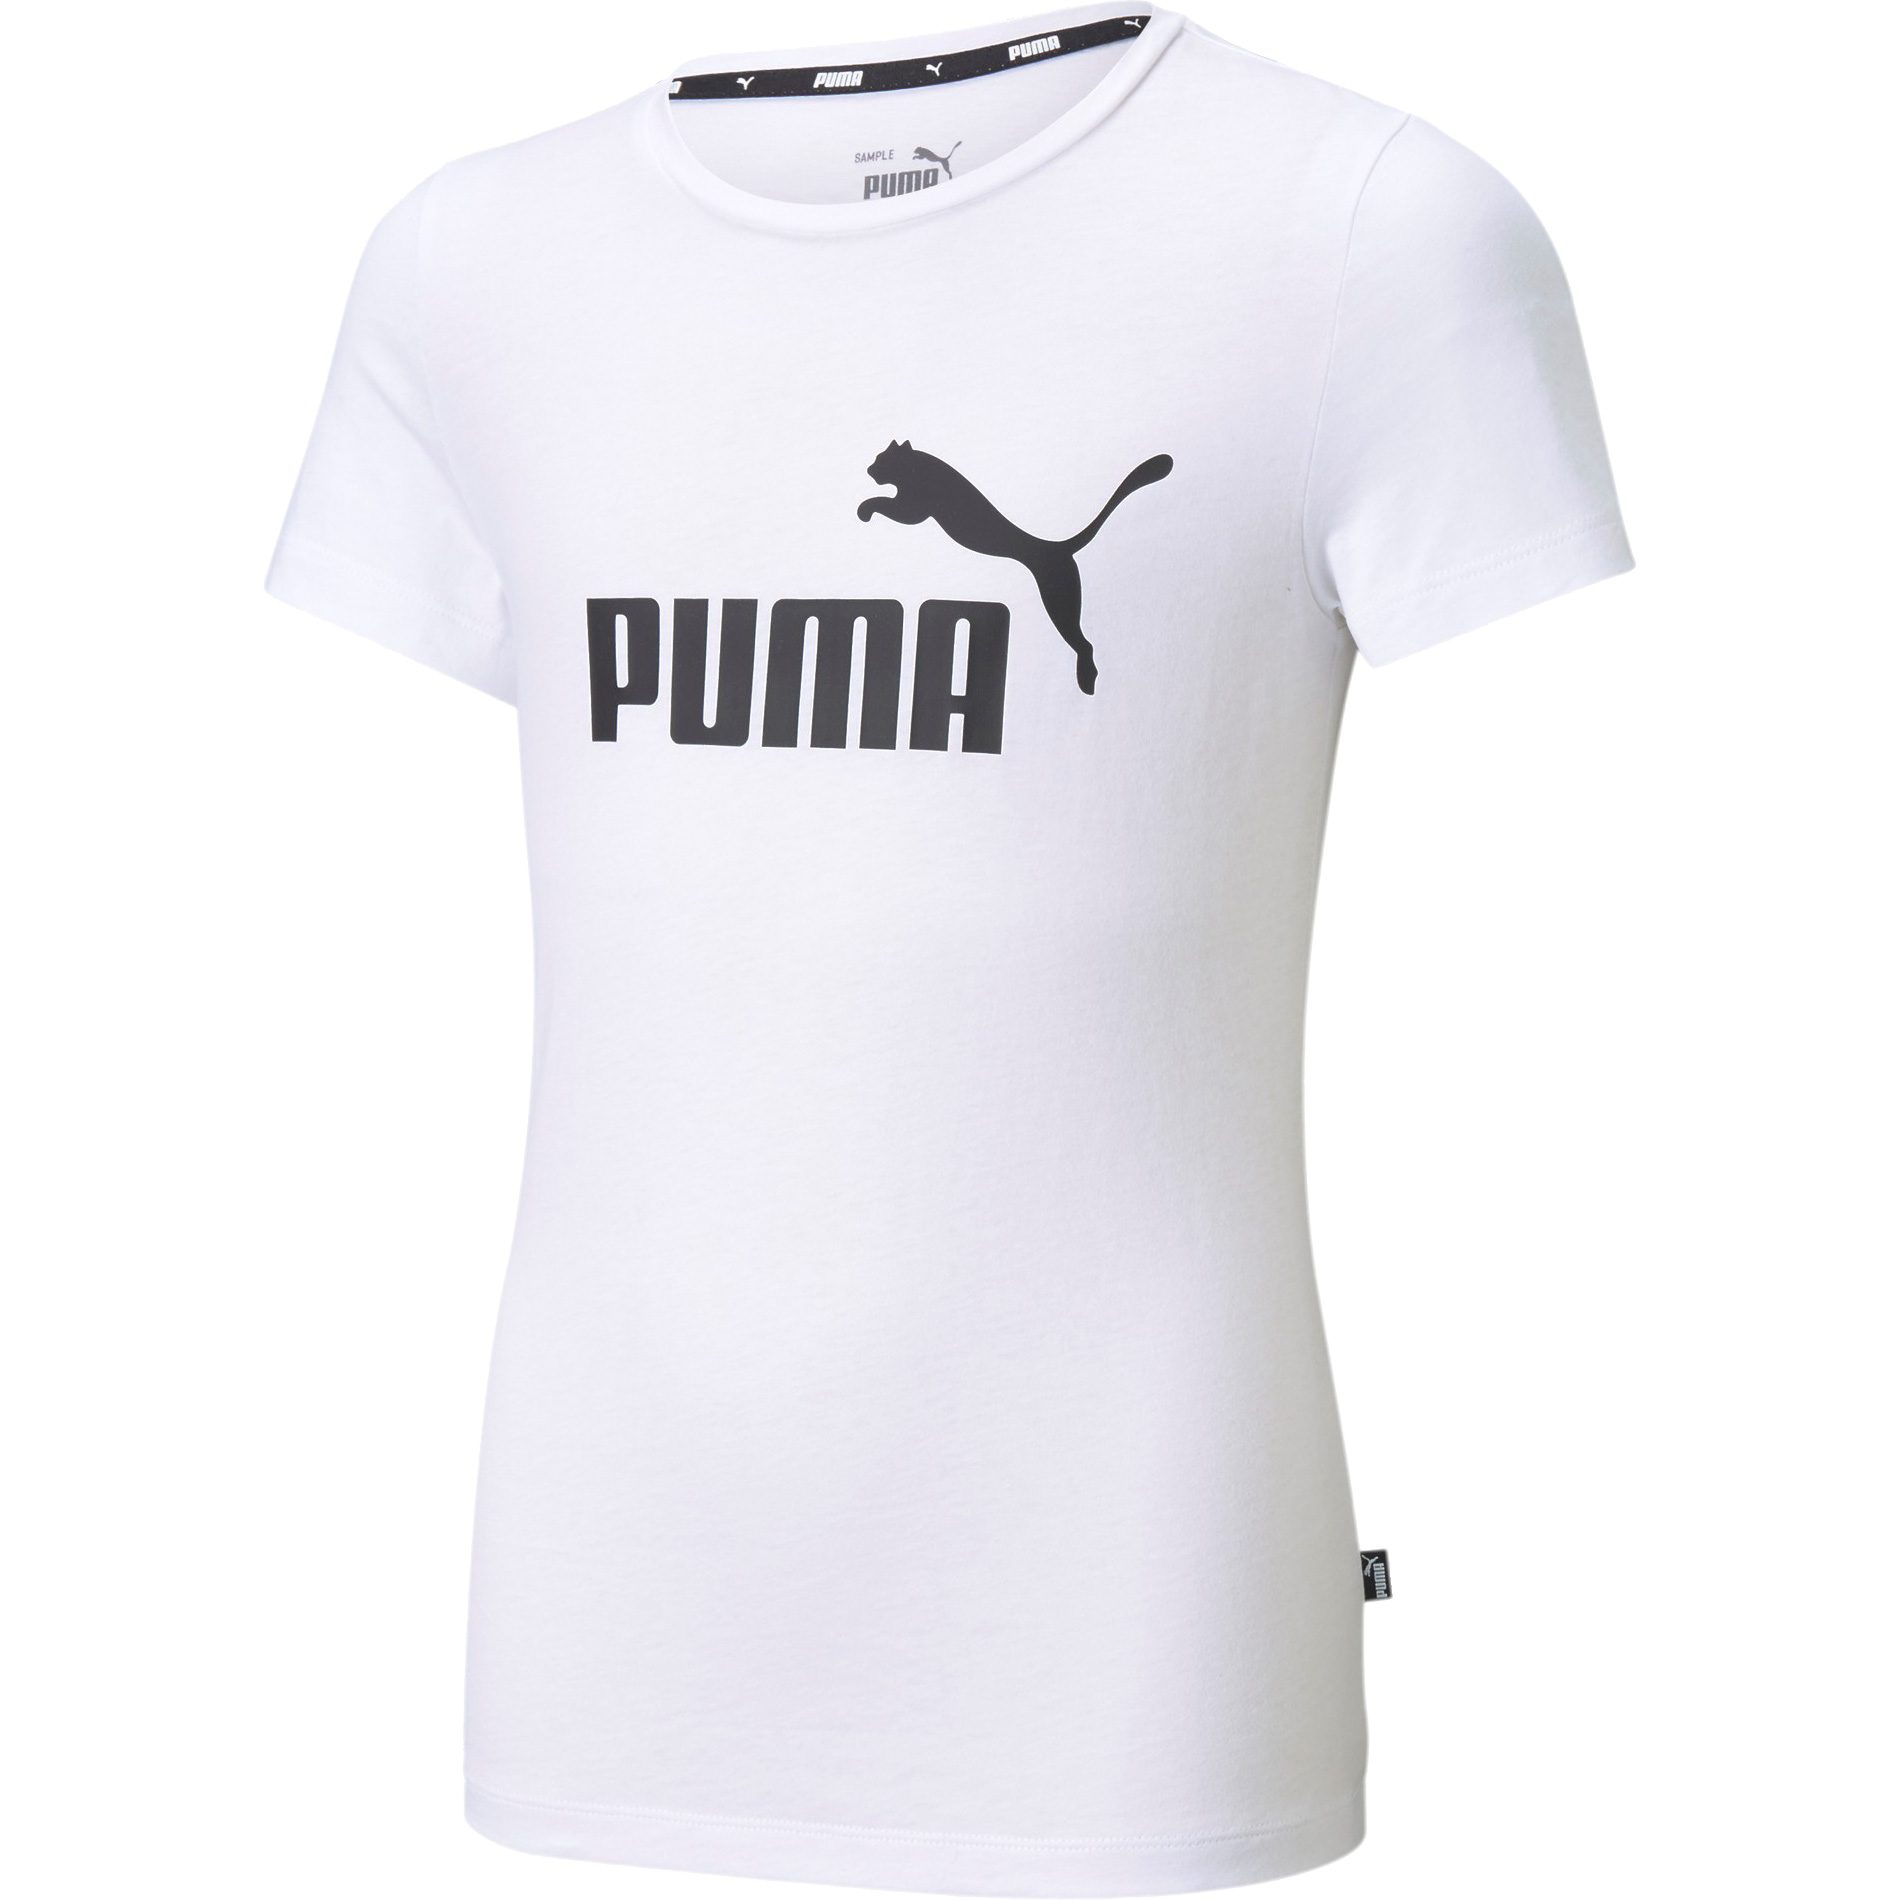 Puma - T-Shirt Essentials Sport Shop Bittl im Mädchen Logo kaufen white puma